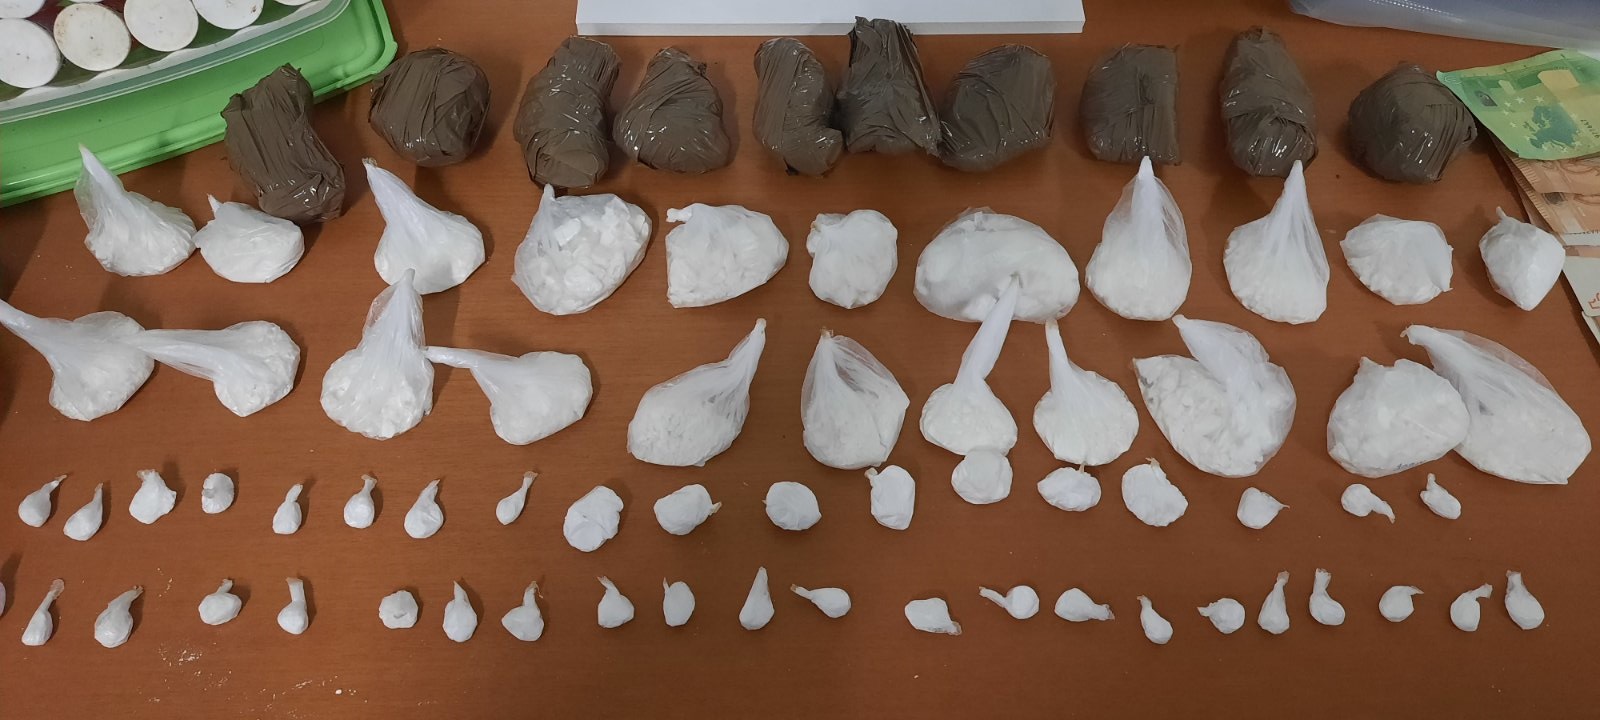 Ηράκλειο: Είχαν κρύψει σε υπαίθρια “καβάτζα” 900 γρ. κοκαΐνη – Δύο συλλήψεις για διακίνηση